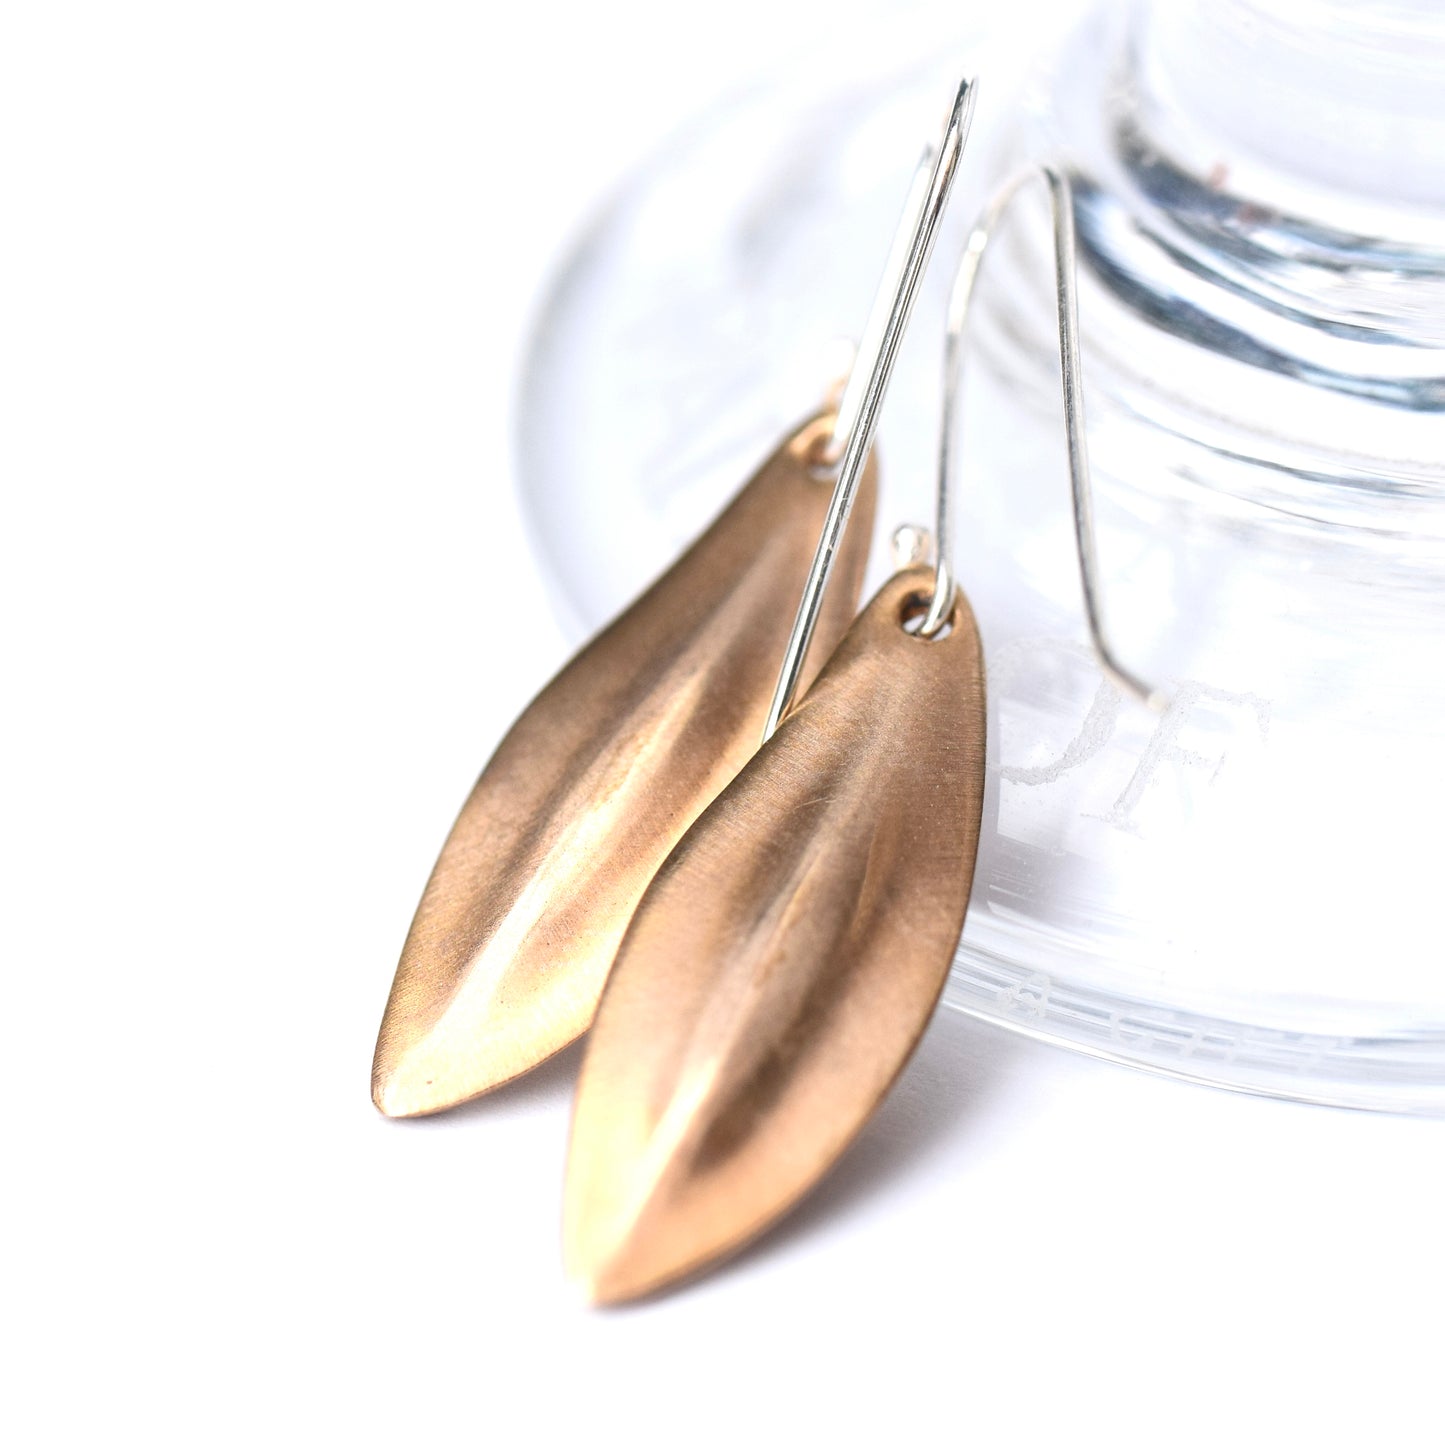 Seed pod earrings in brass